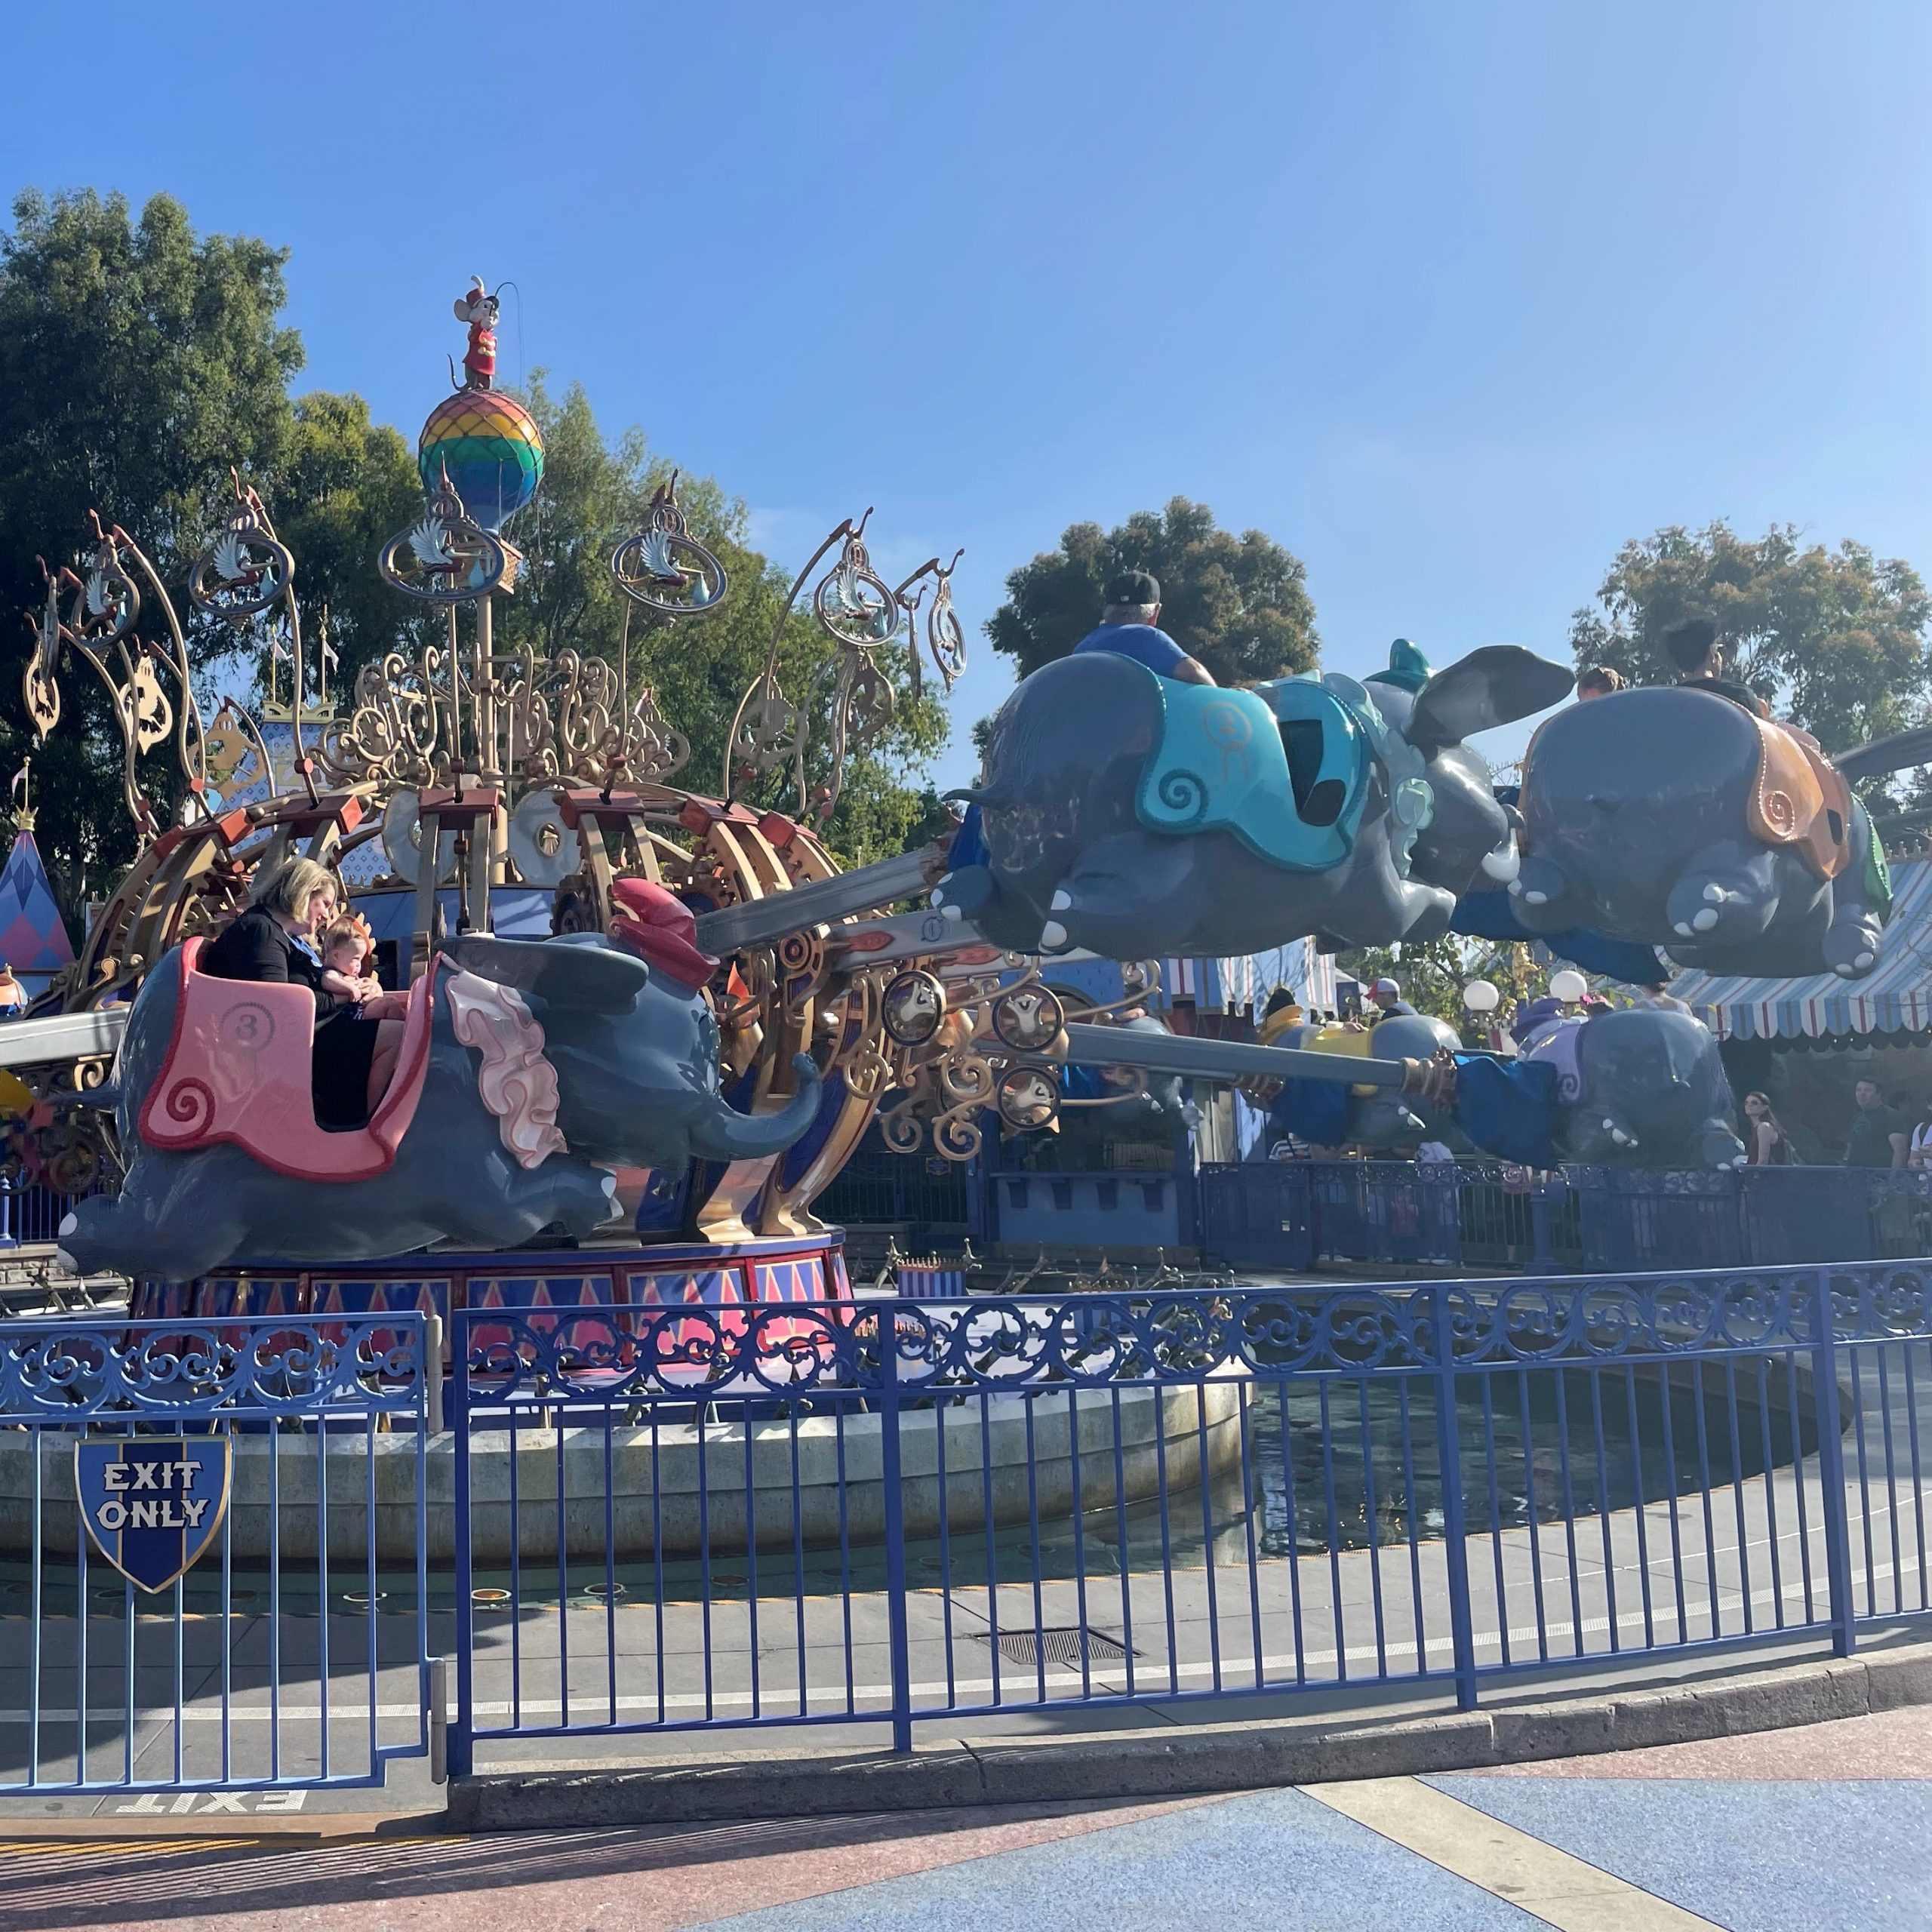 Best Days to Visit Disneyland